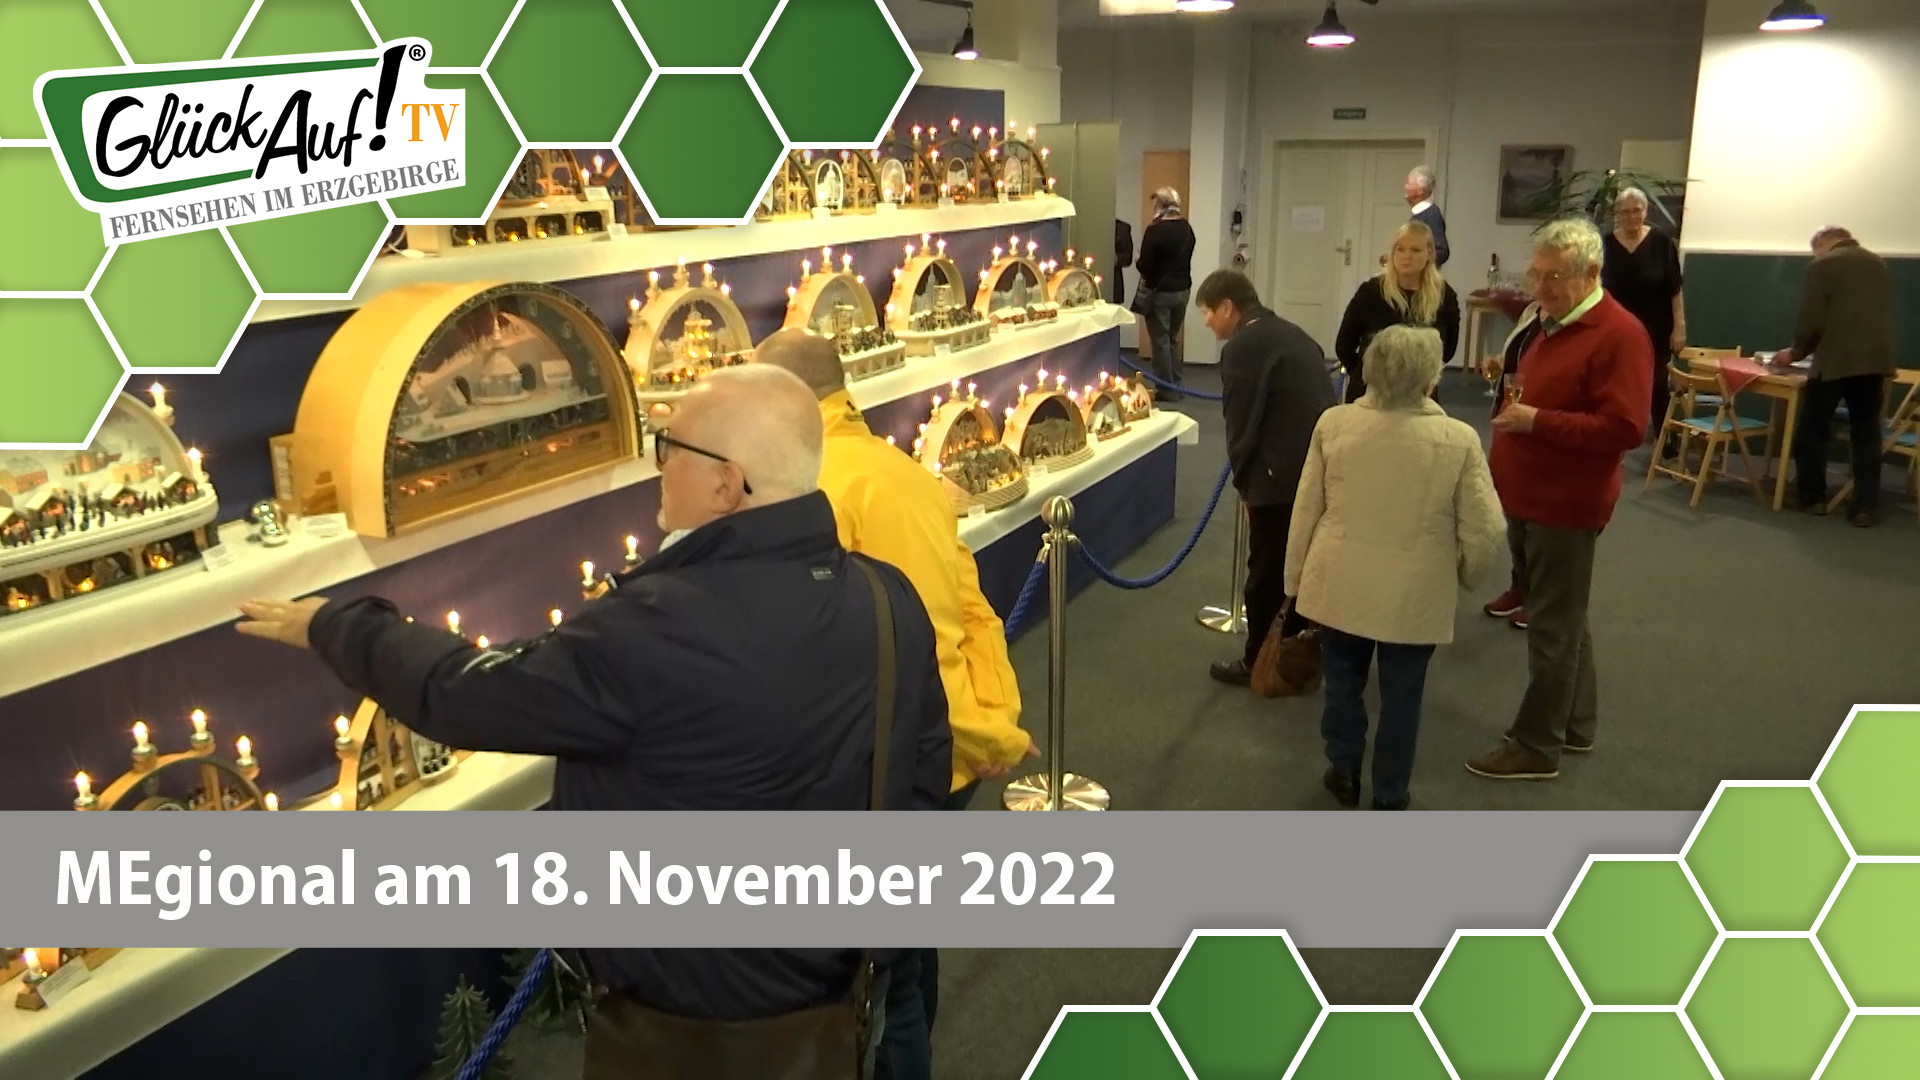 MEgional am 18. November 2022 - mit der neuen Ausstellung in der Böttcherfabrik